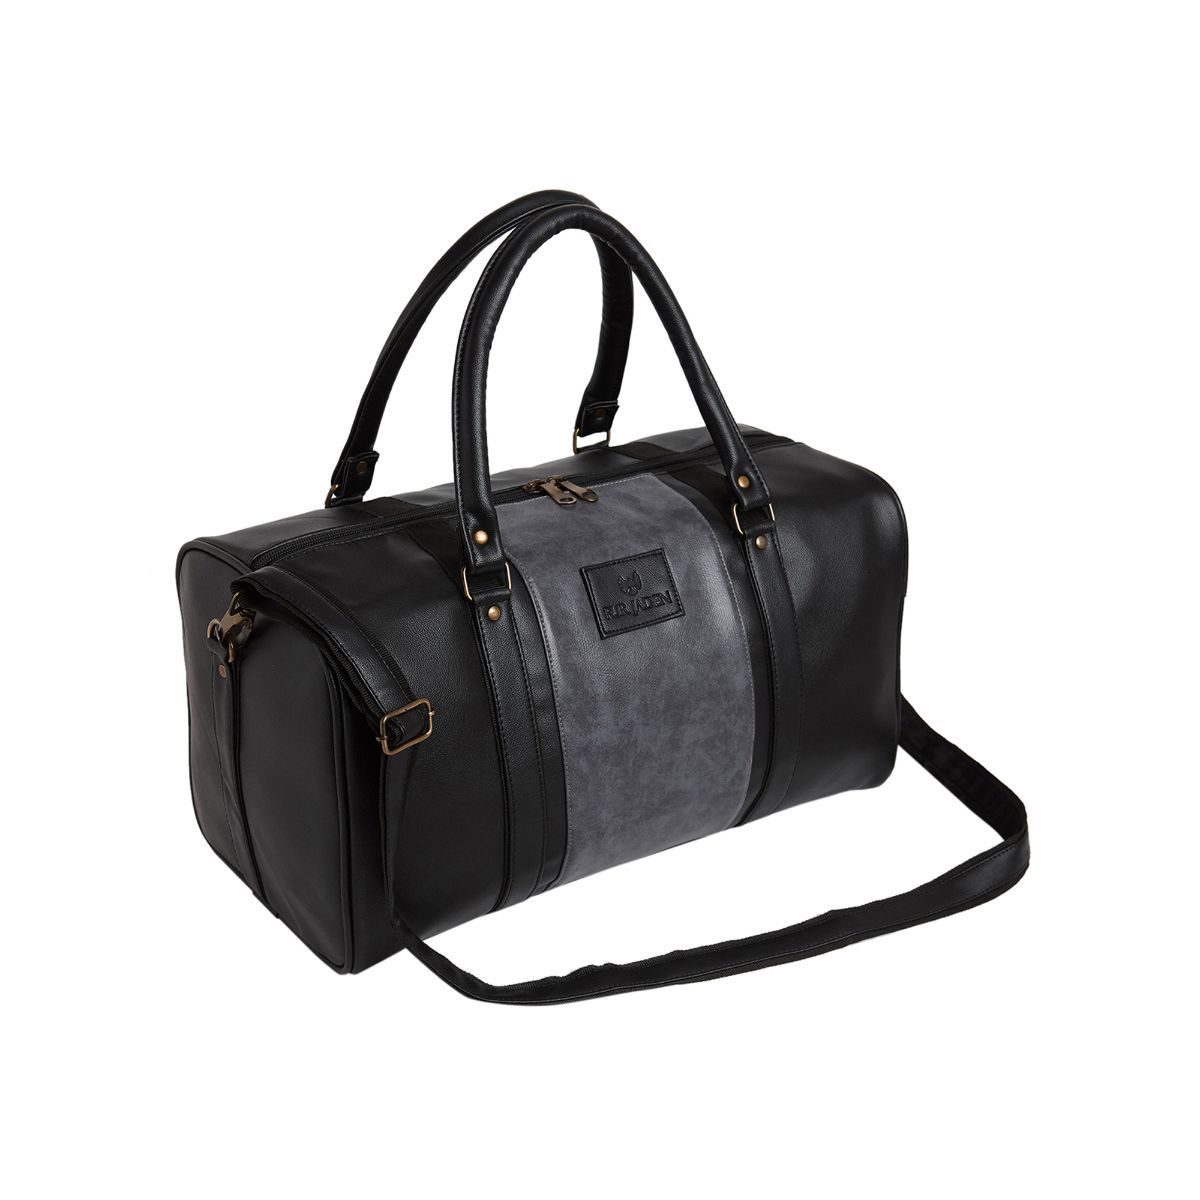 FUR JADEN Faux Leather 25L Black & Grey Weekender Travel Duffle Bag ...